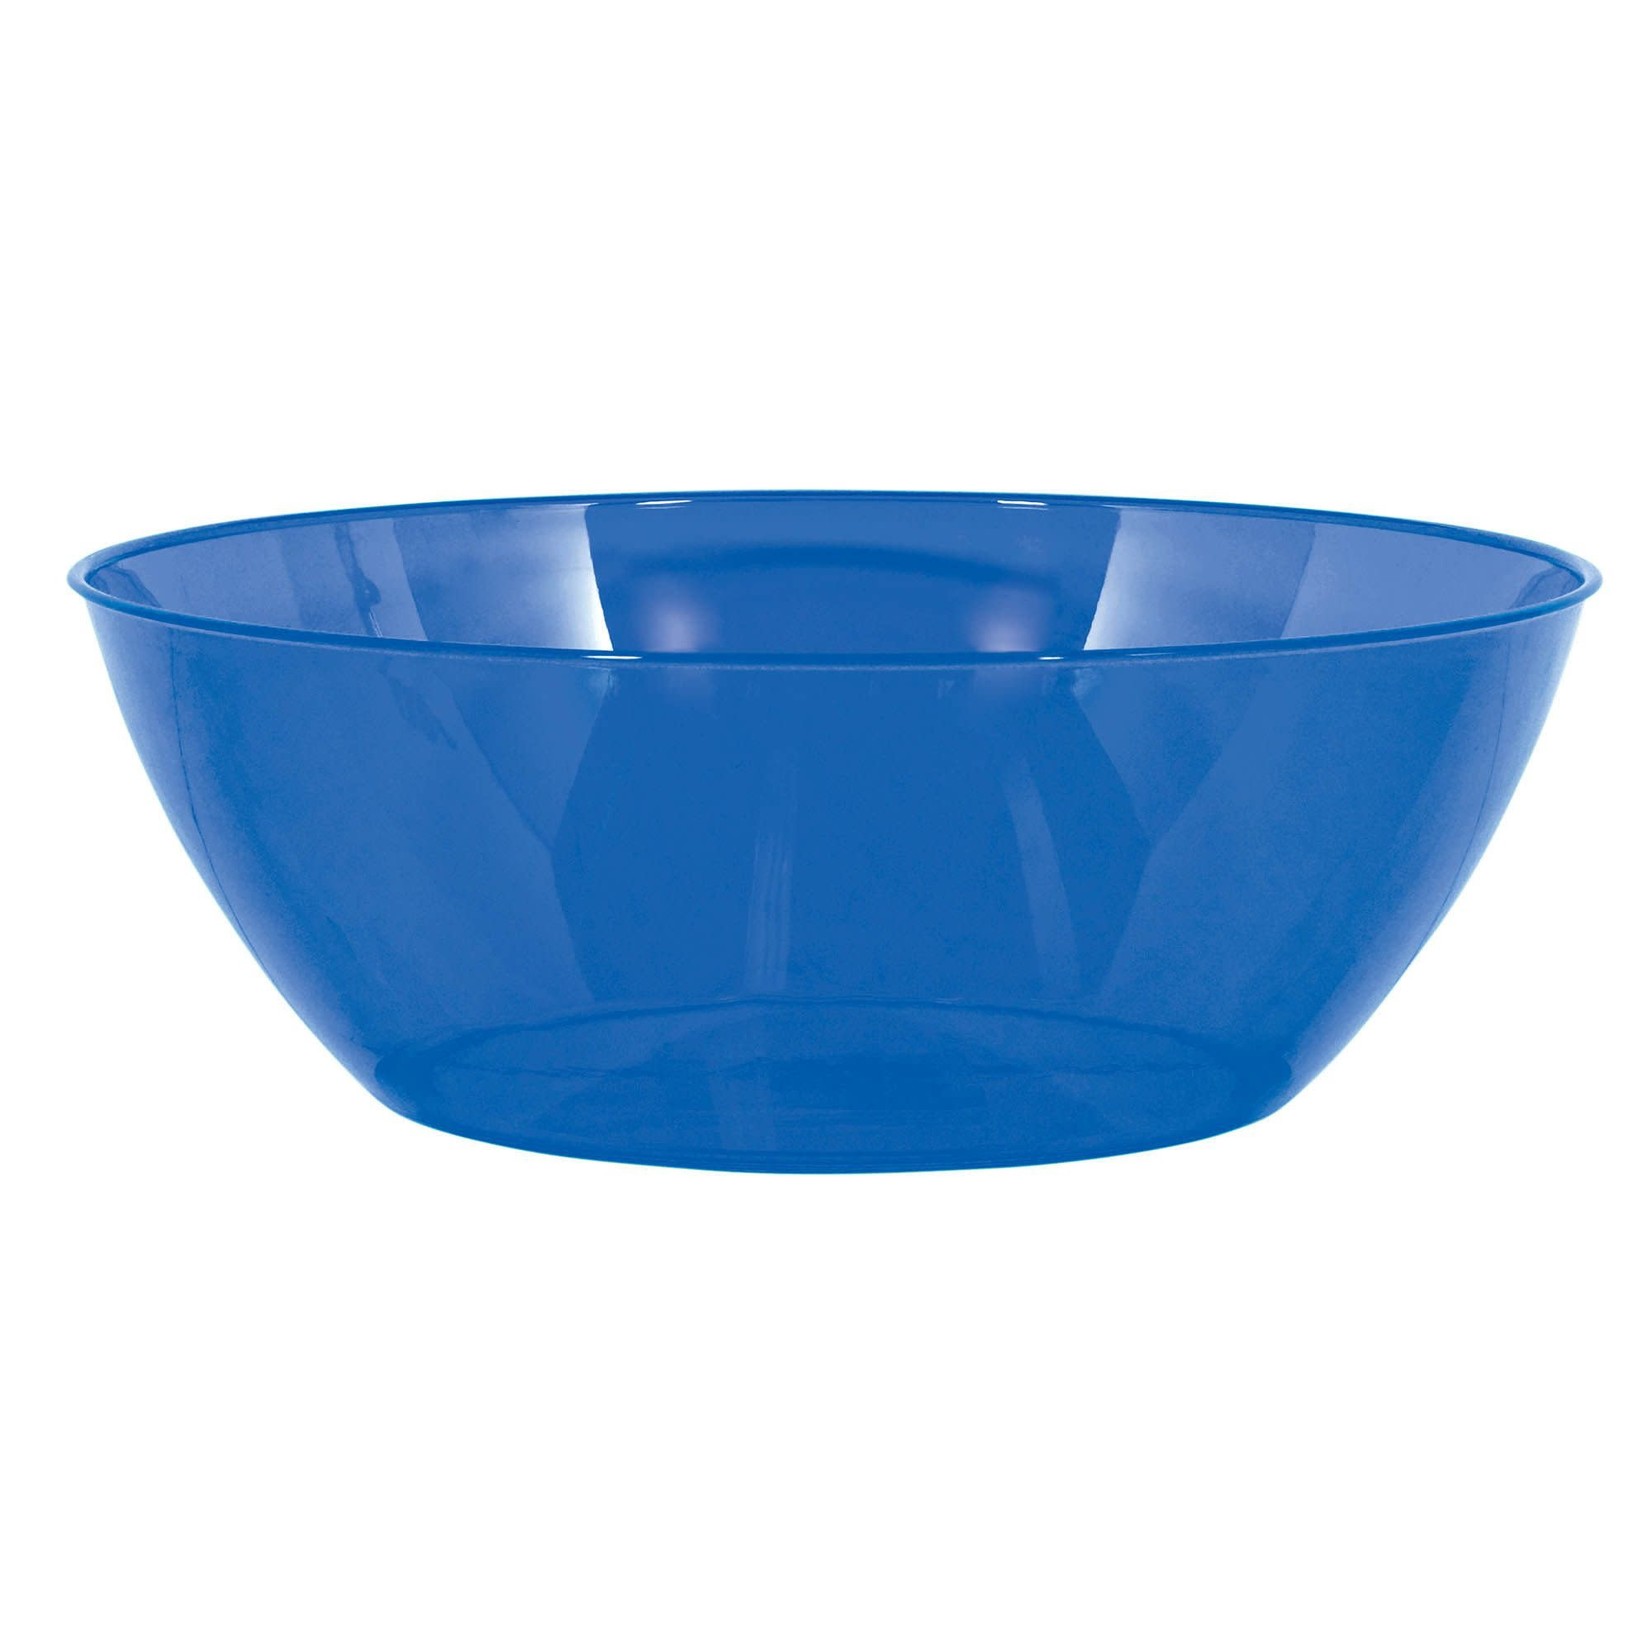 10 Qts. Bowl - Bright Royal Blue